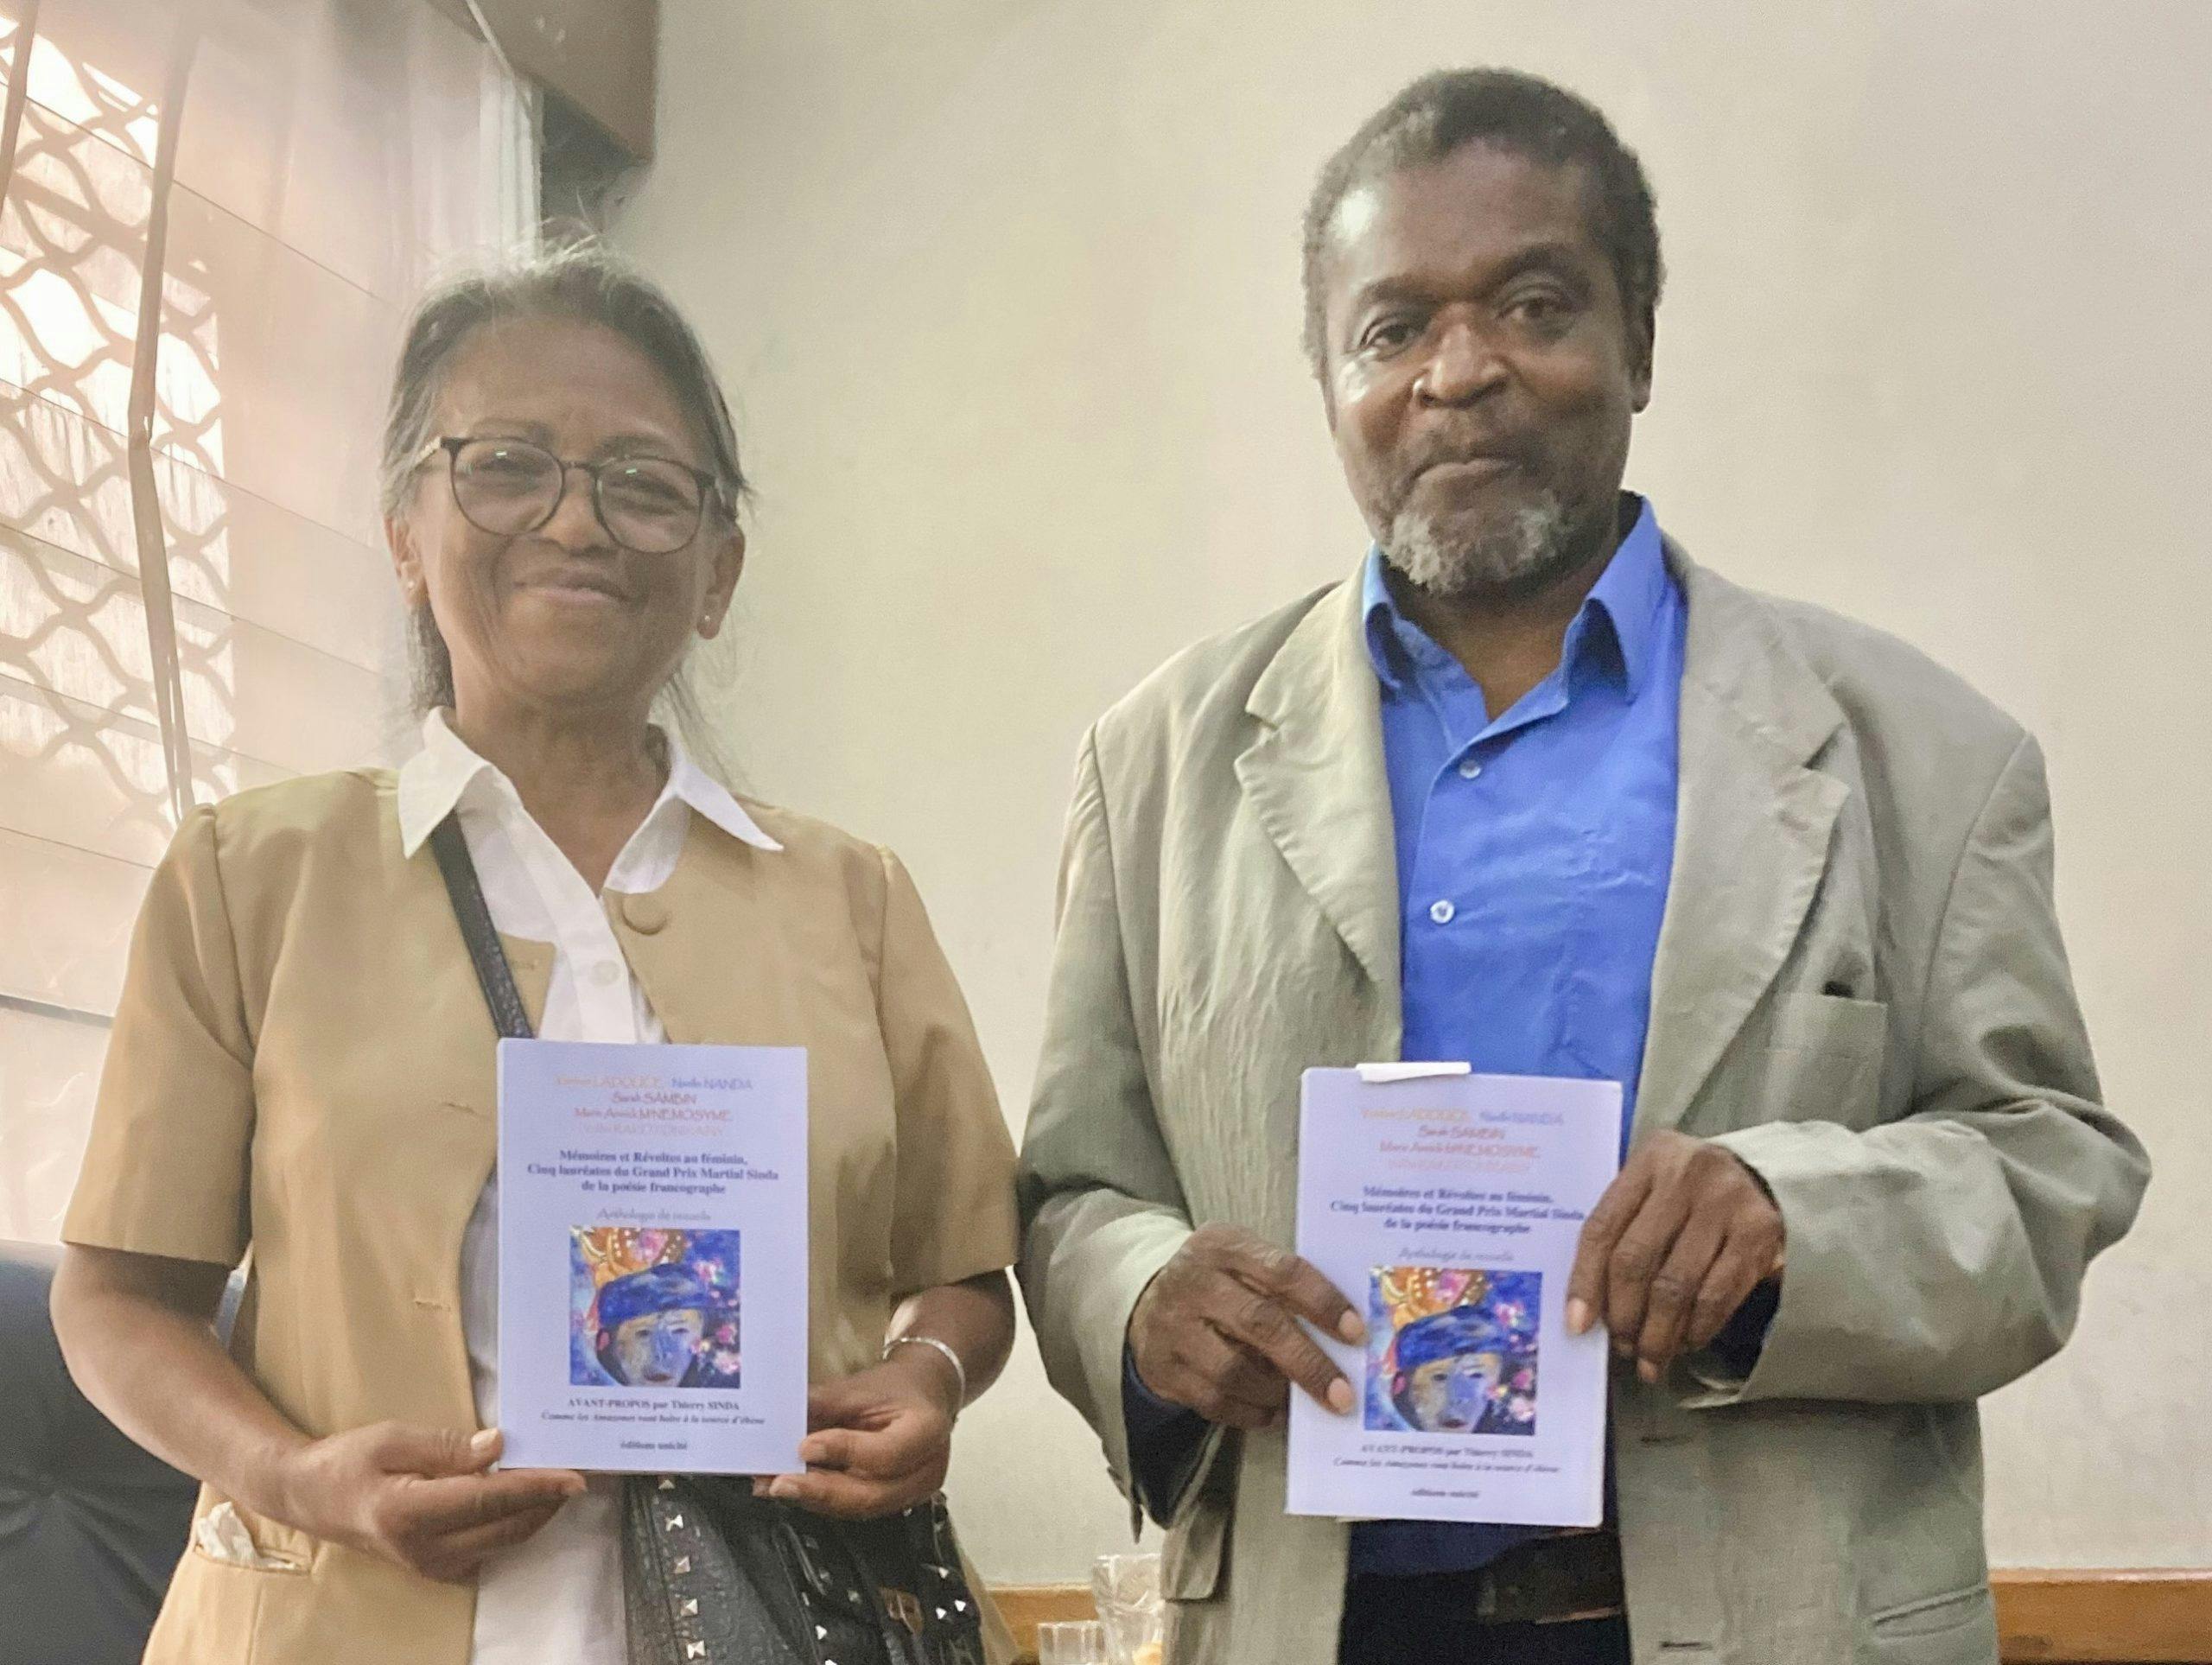 De retour de Madagascar Thierry Sinda livre son carnet de voyage